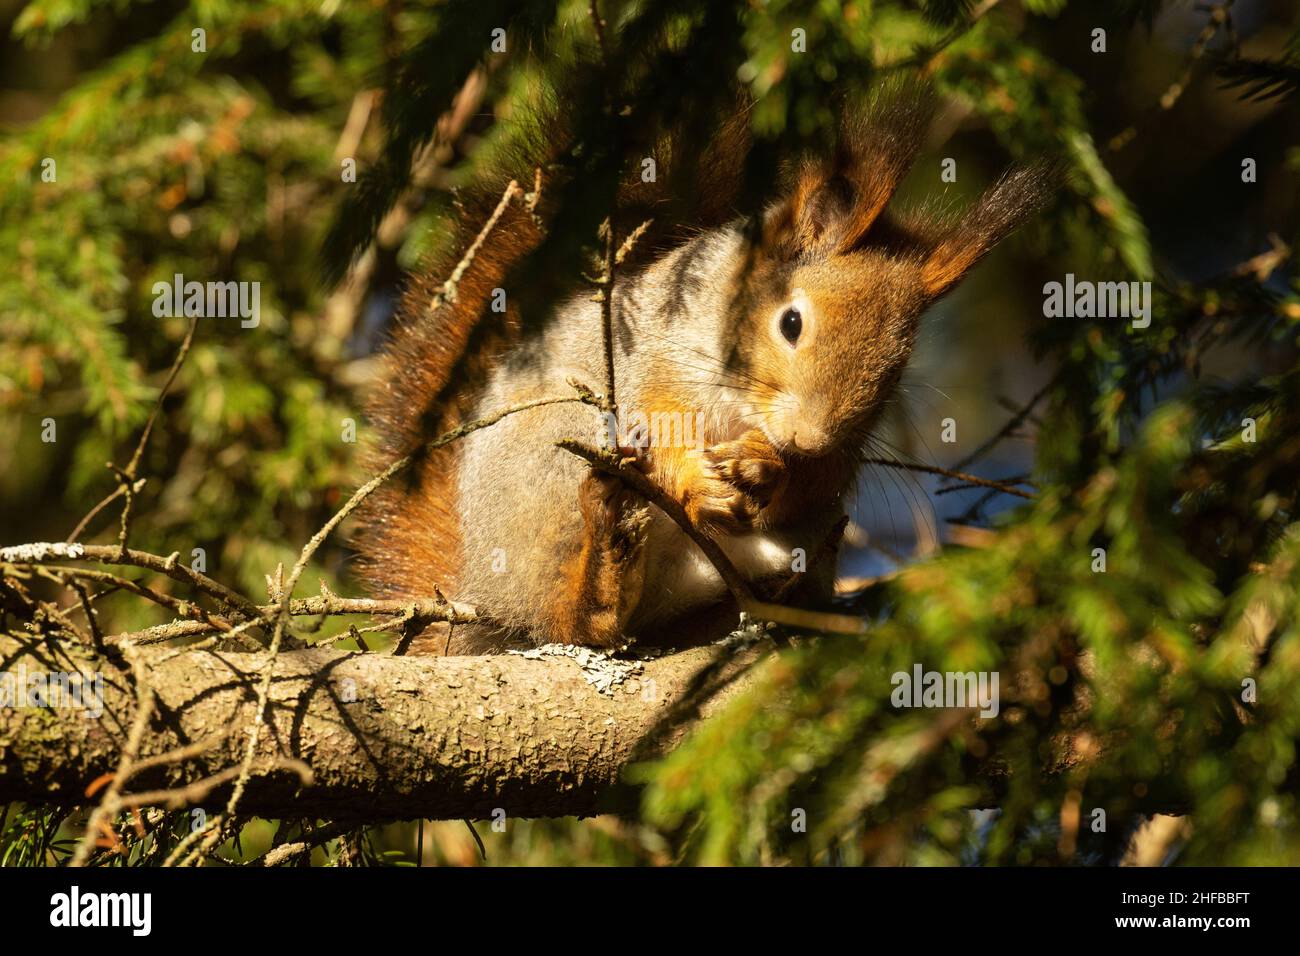 Gros plan de l'écureuil roux, Sciurus vulgaris se nettoyant pendant une soirée d'automne ensoleillée dans une forêt boréale. Banque D'Images